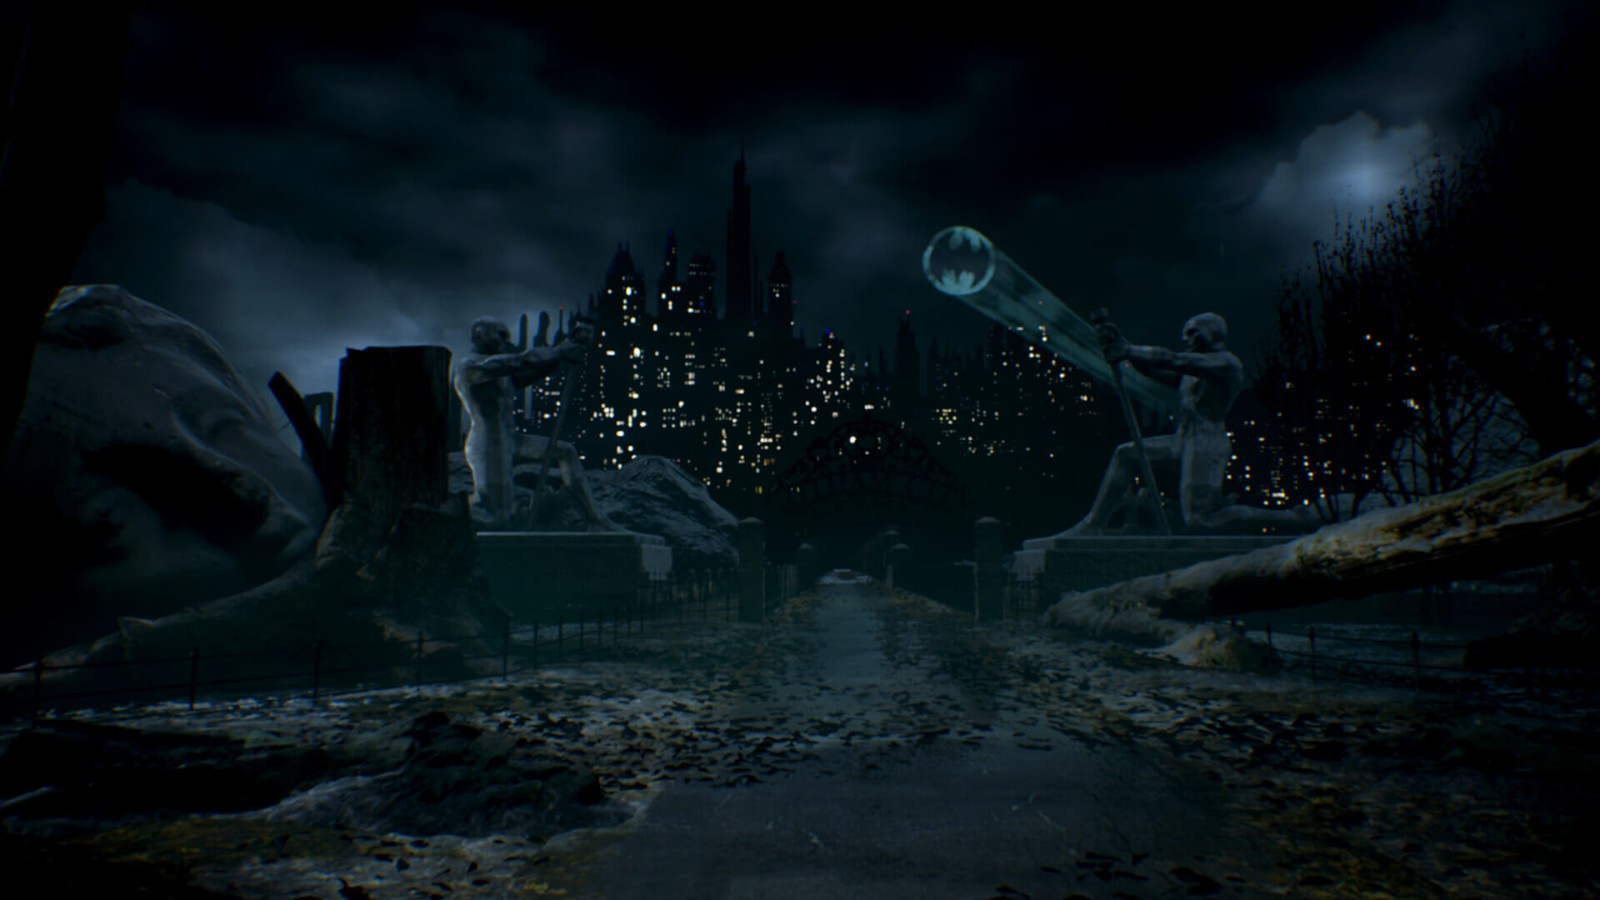 虚幻引擎自制《蝙蝠侠1989》游戏 场景忠于电影版